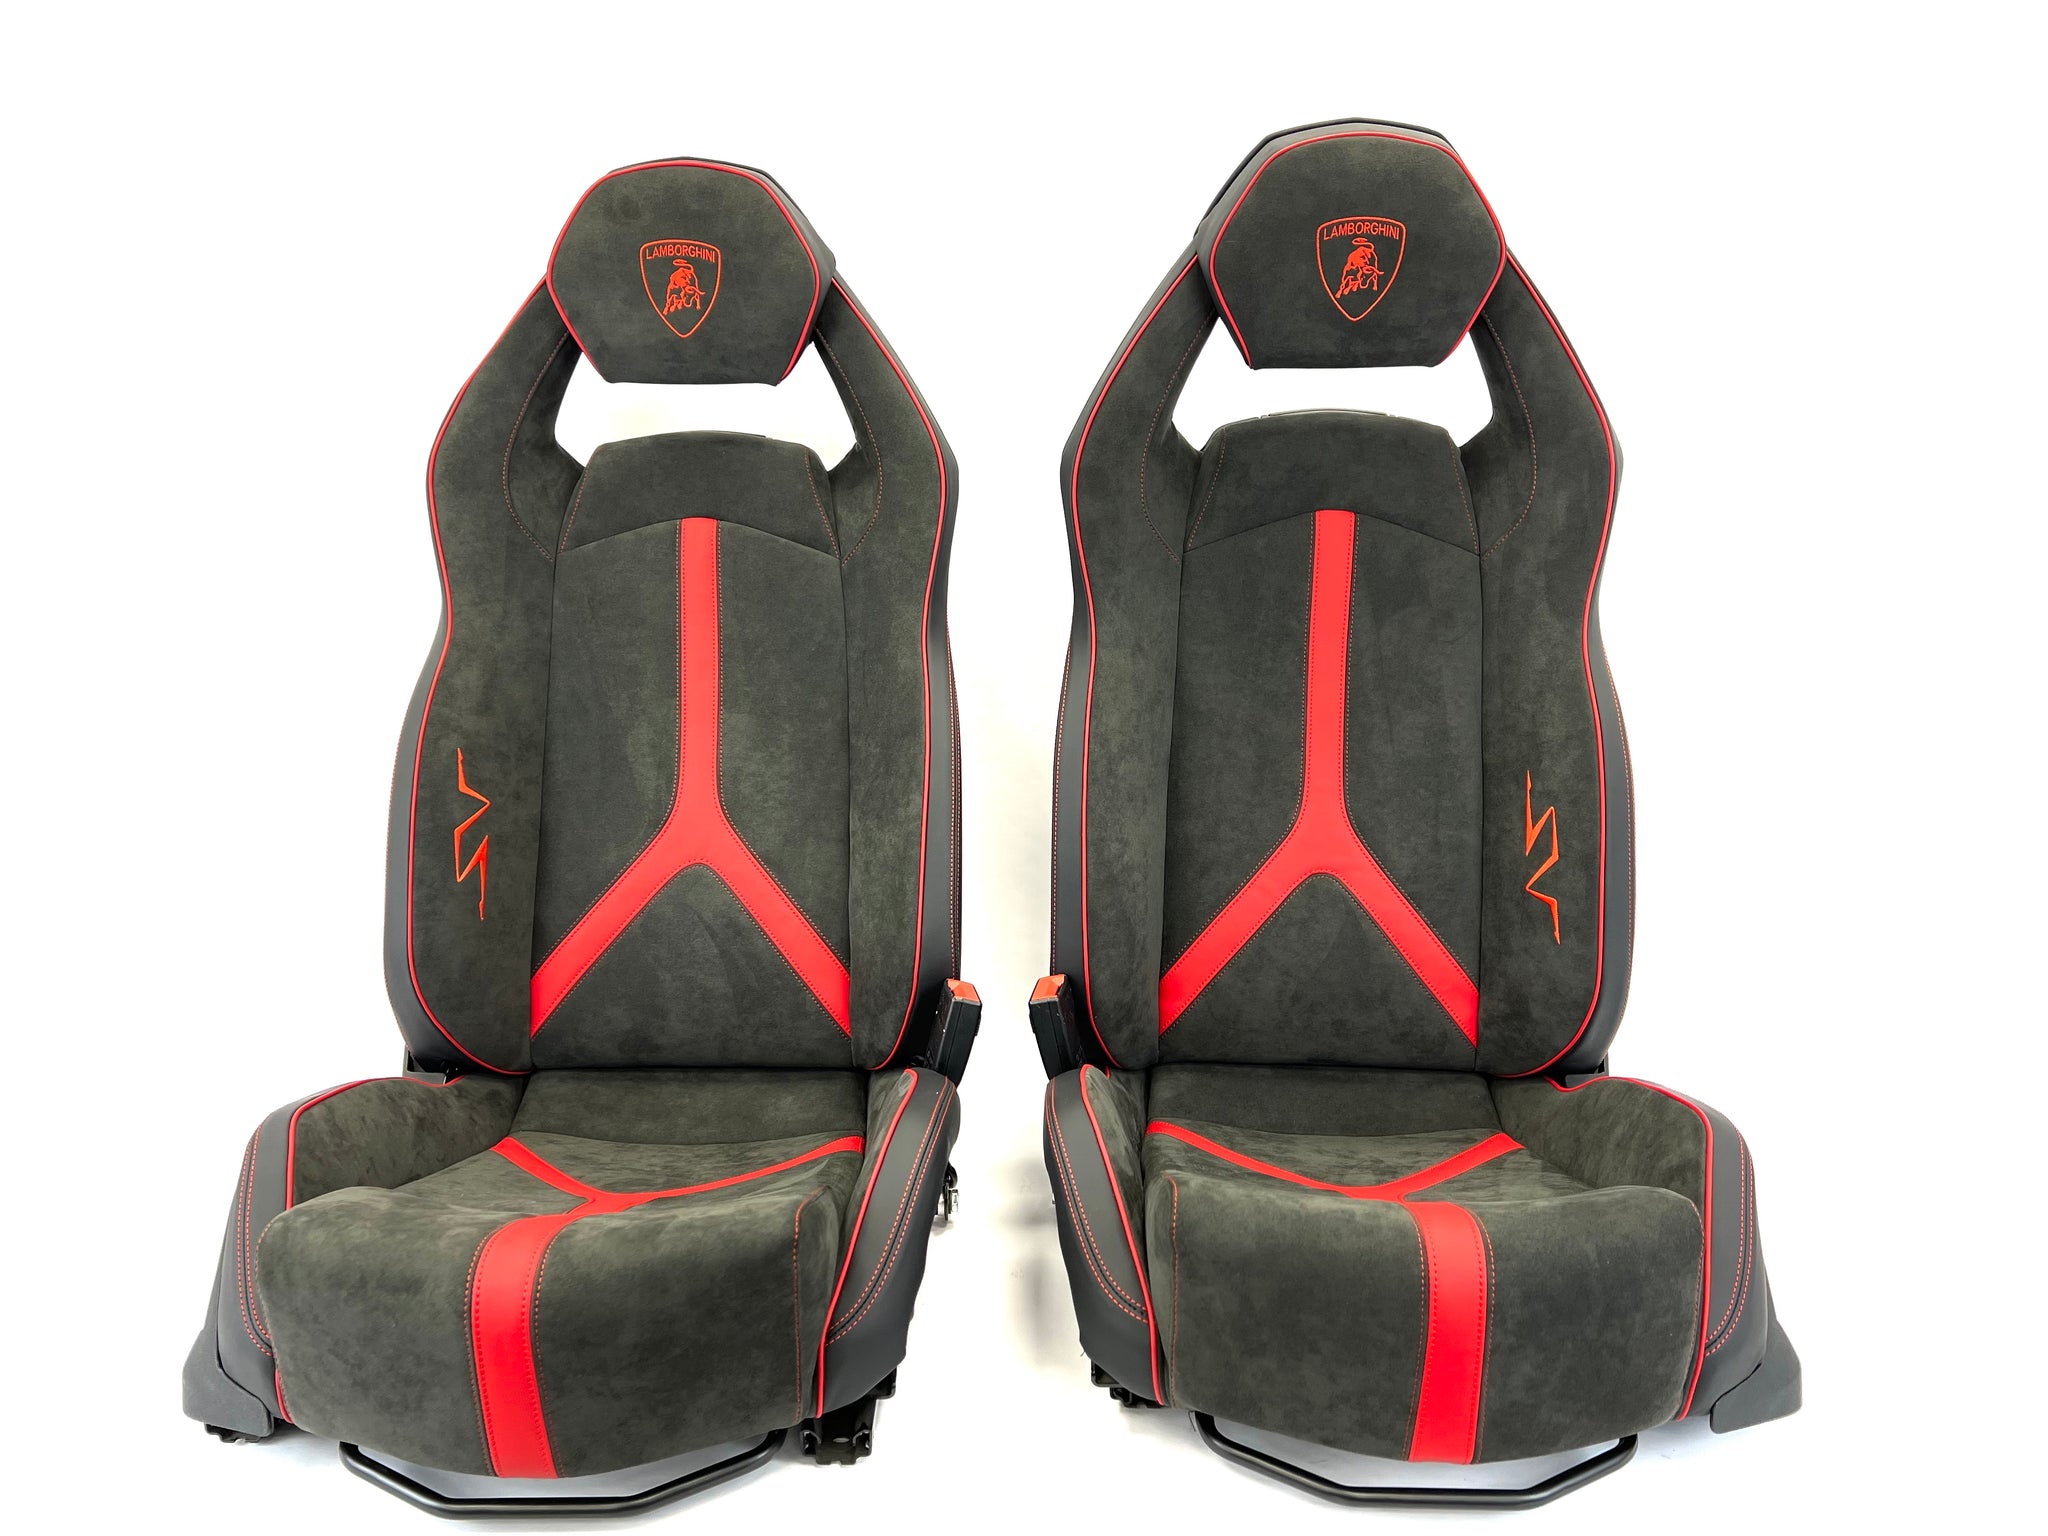 LAMBORGHINI AVENTADOR SV LP750-4 COMFORT SEATS IN BLACK-RED – ApexSpares